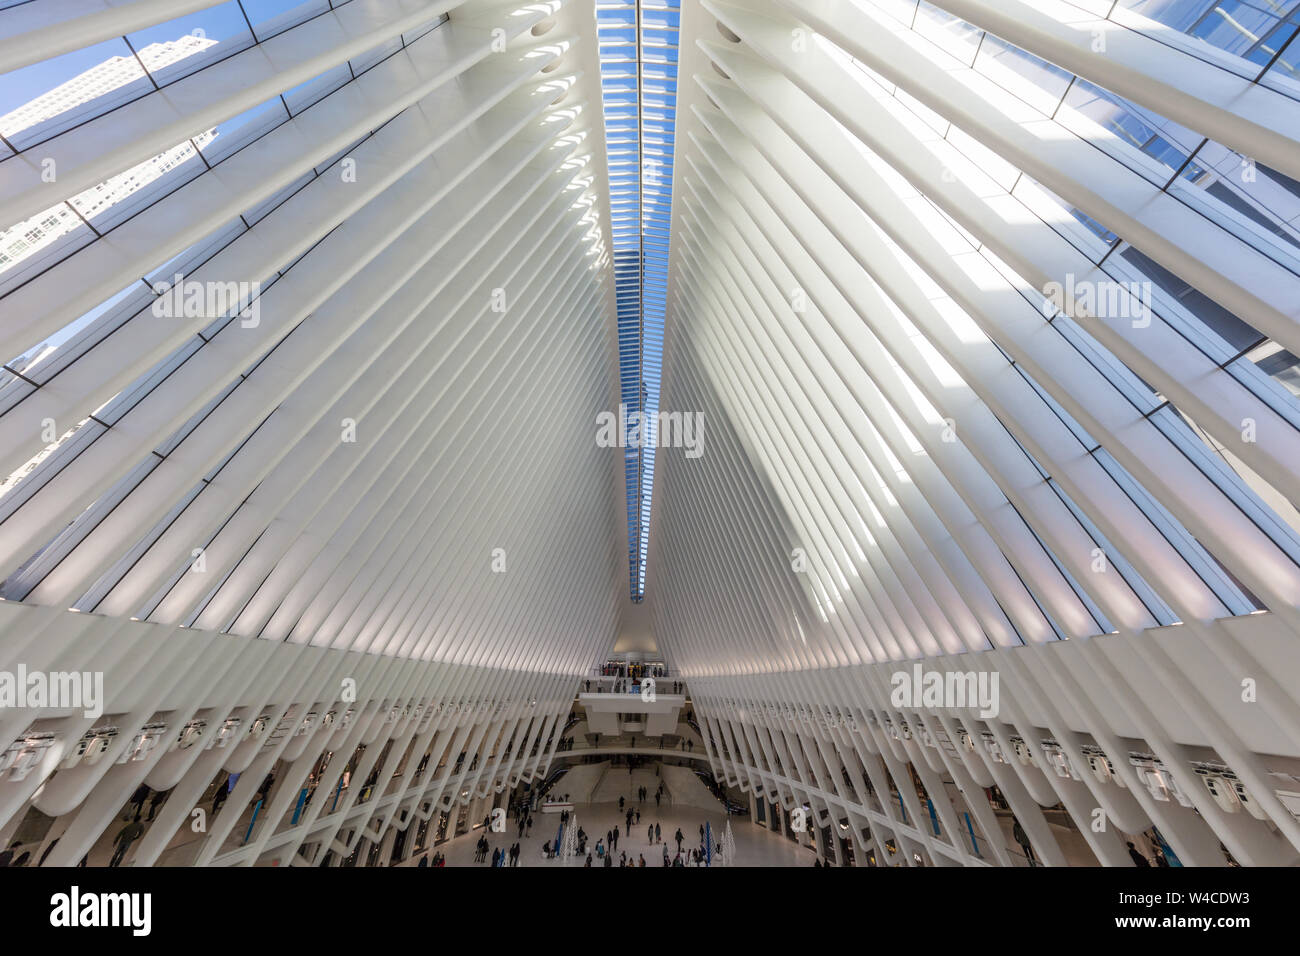 NEW YORK CITY - 25. MÄRZ 2018: Innenansicht des Occulus World Trade Center Station Design von Architekt Manhattan Sehenswürdigkeiten Stockfoto